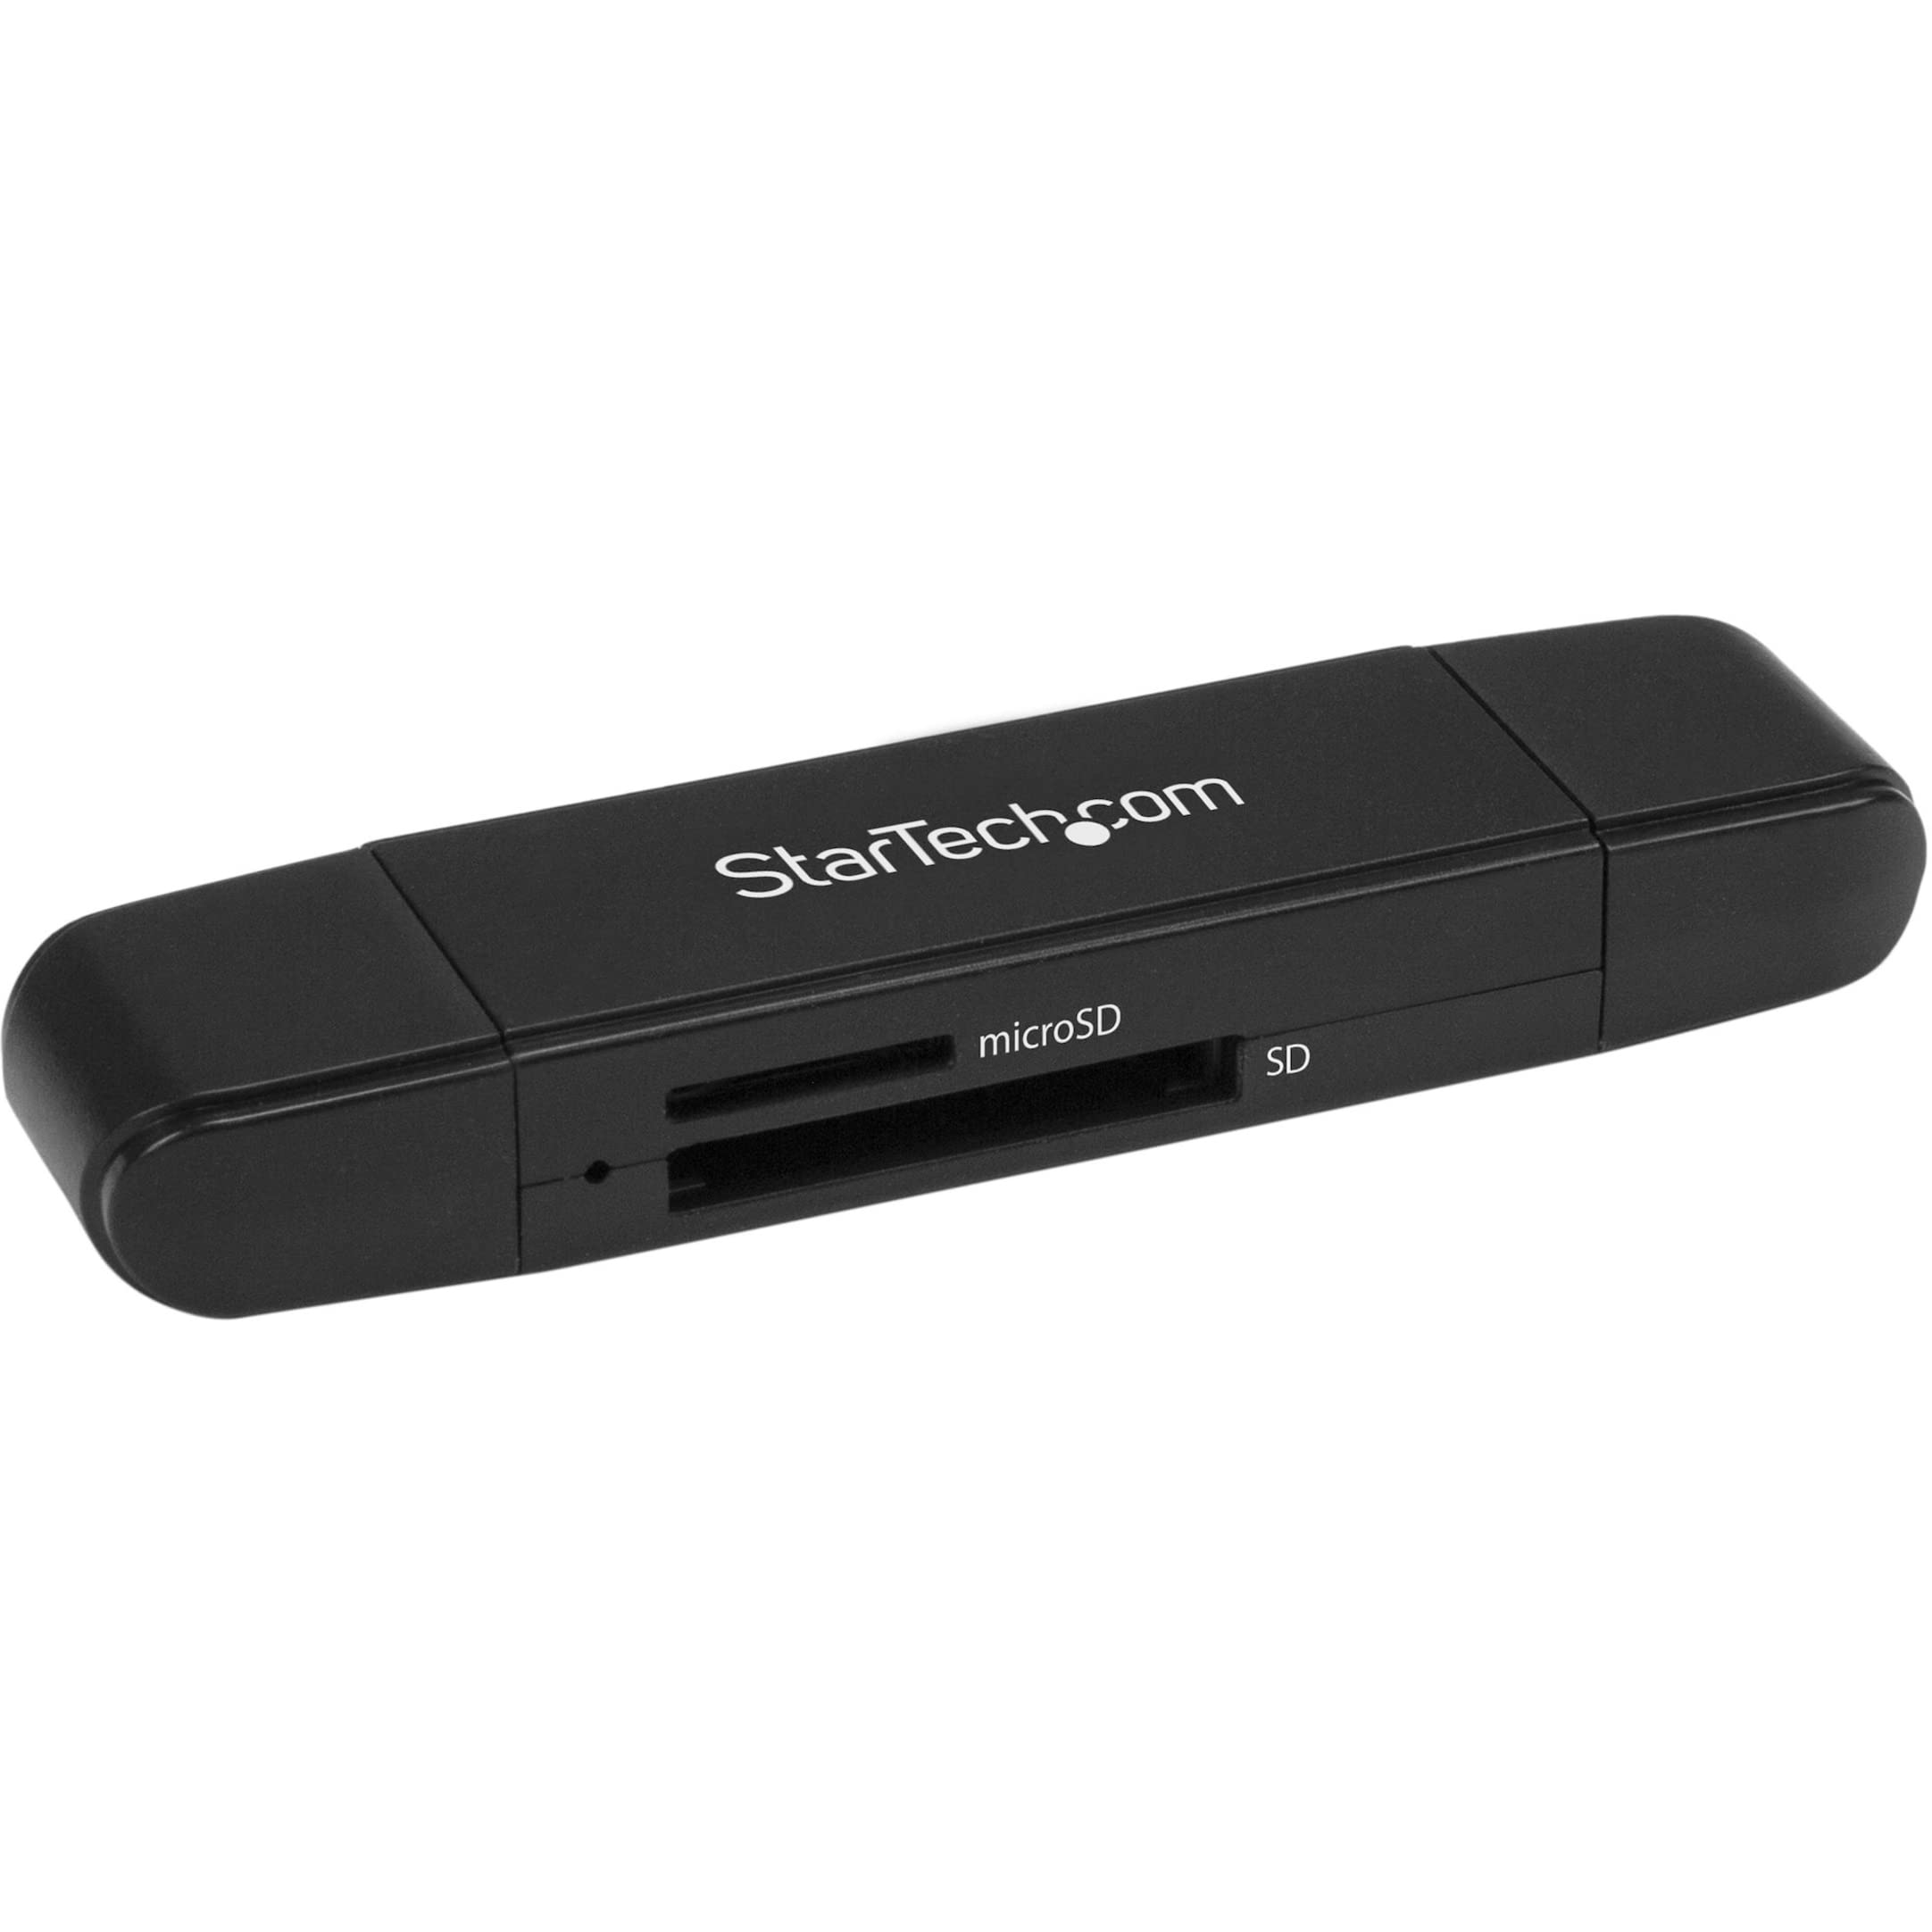 StarTech.com USB Memory Card Reader - USB 3.0 SD Card Reader - Compact - 5Gbps - USB Card Reader - MicroSD USB Adapter (SDMSDRWU3AC)